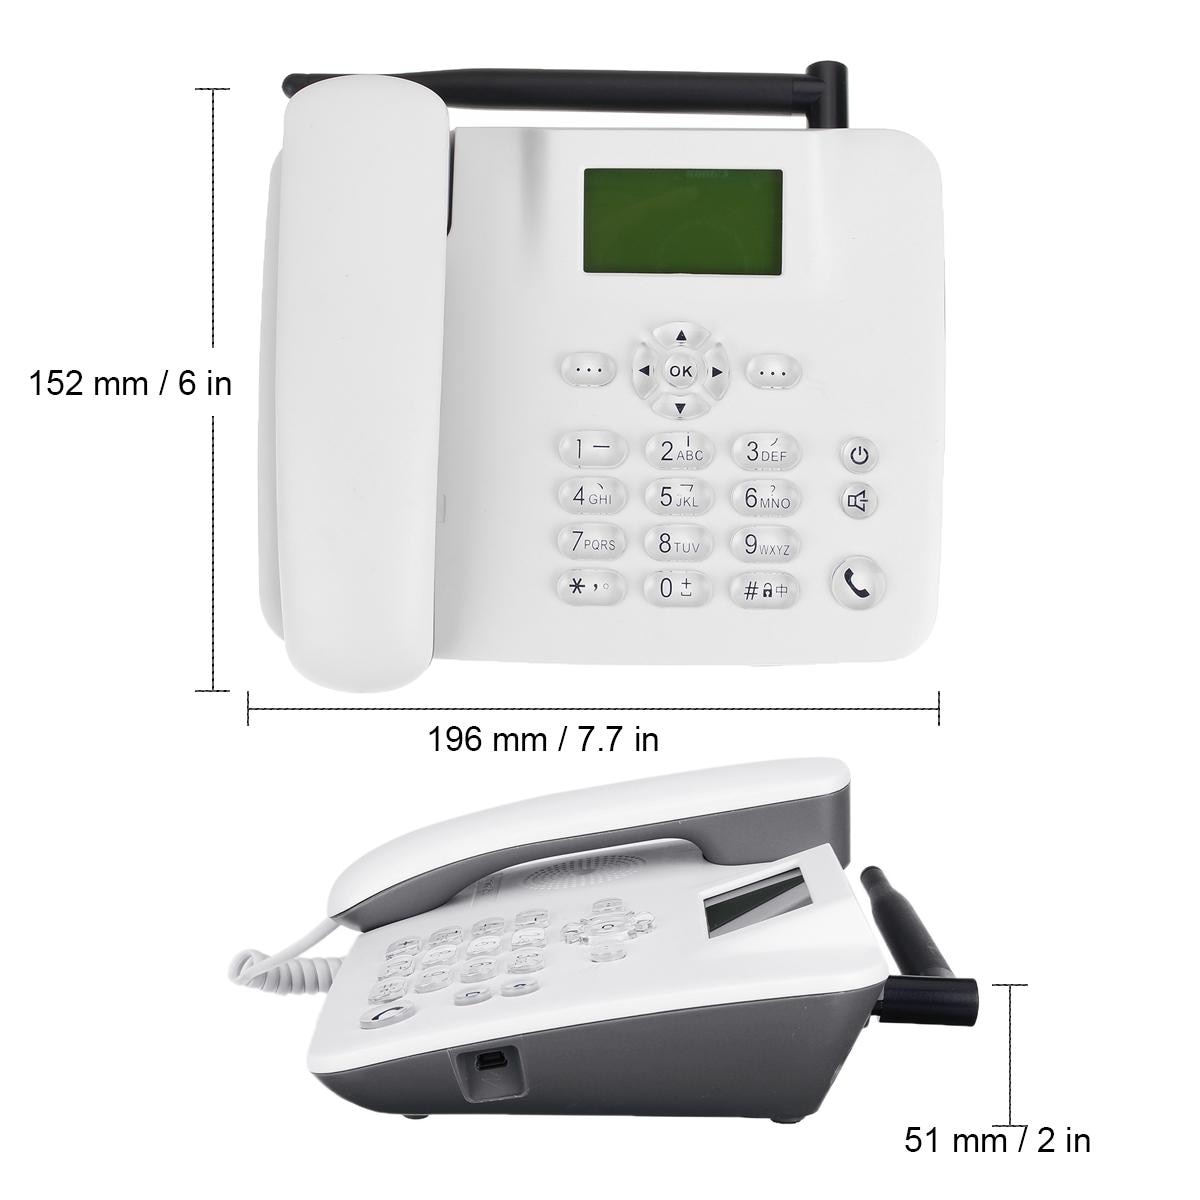 3g 2g gsm fast trådlös telefon skrivbord mobiltelefon lcd skärm sim -kort skrivbord antenn gränssnitt inkommande samtal display 100-240v